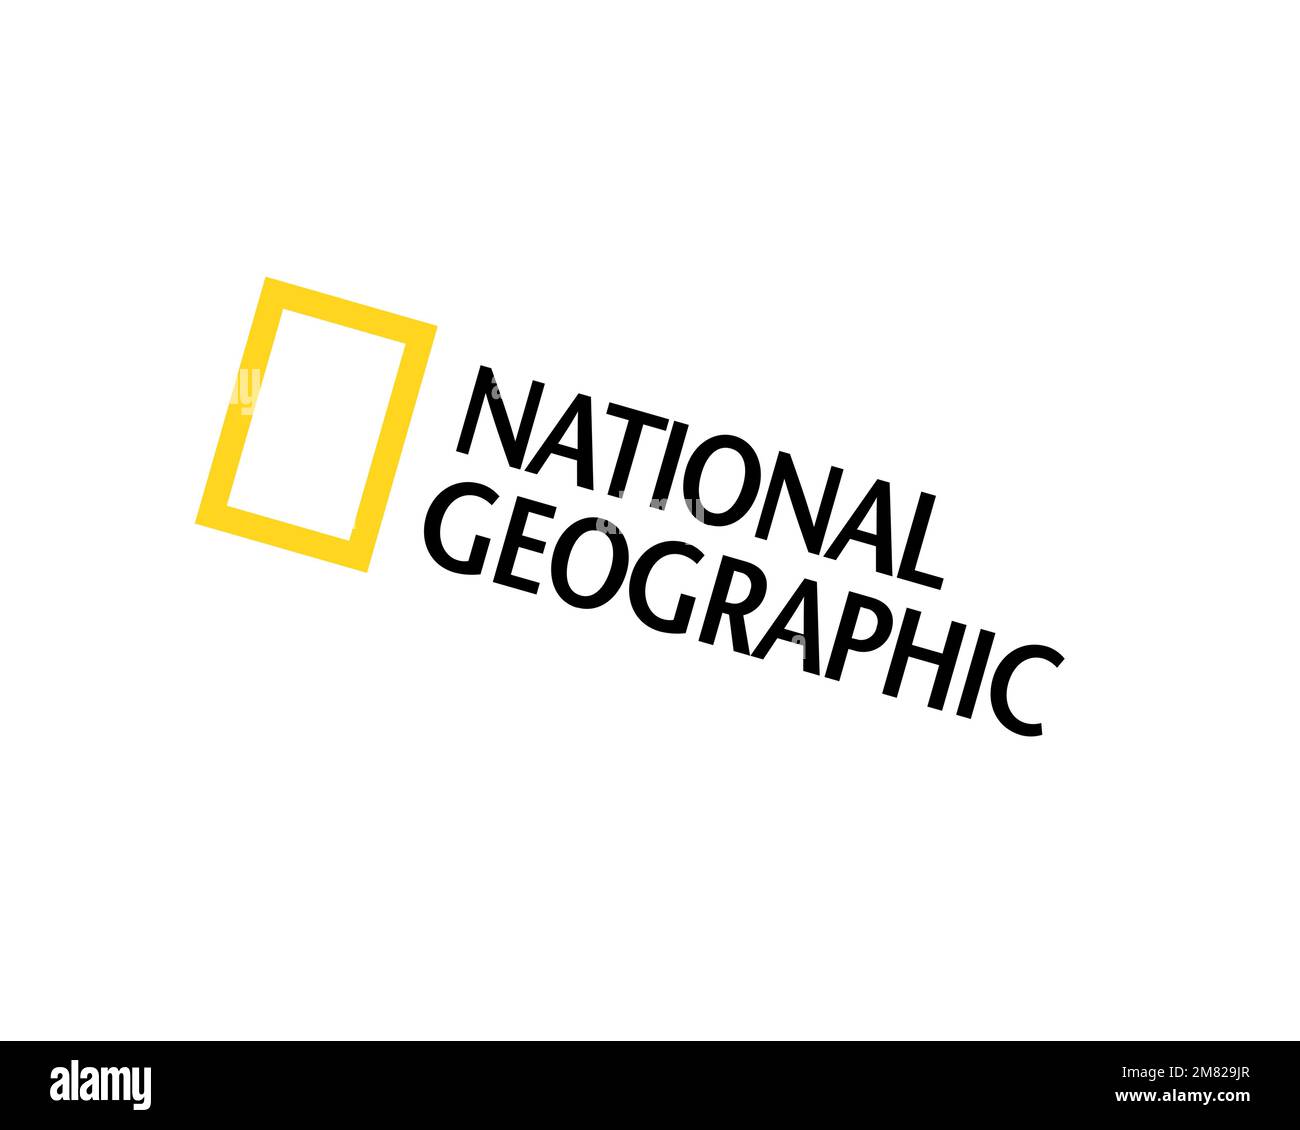 Chaîne de télévision américaine National Geographic, logo pivoté, fond  blanc B Photo Stock - Alamy